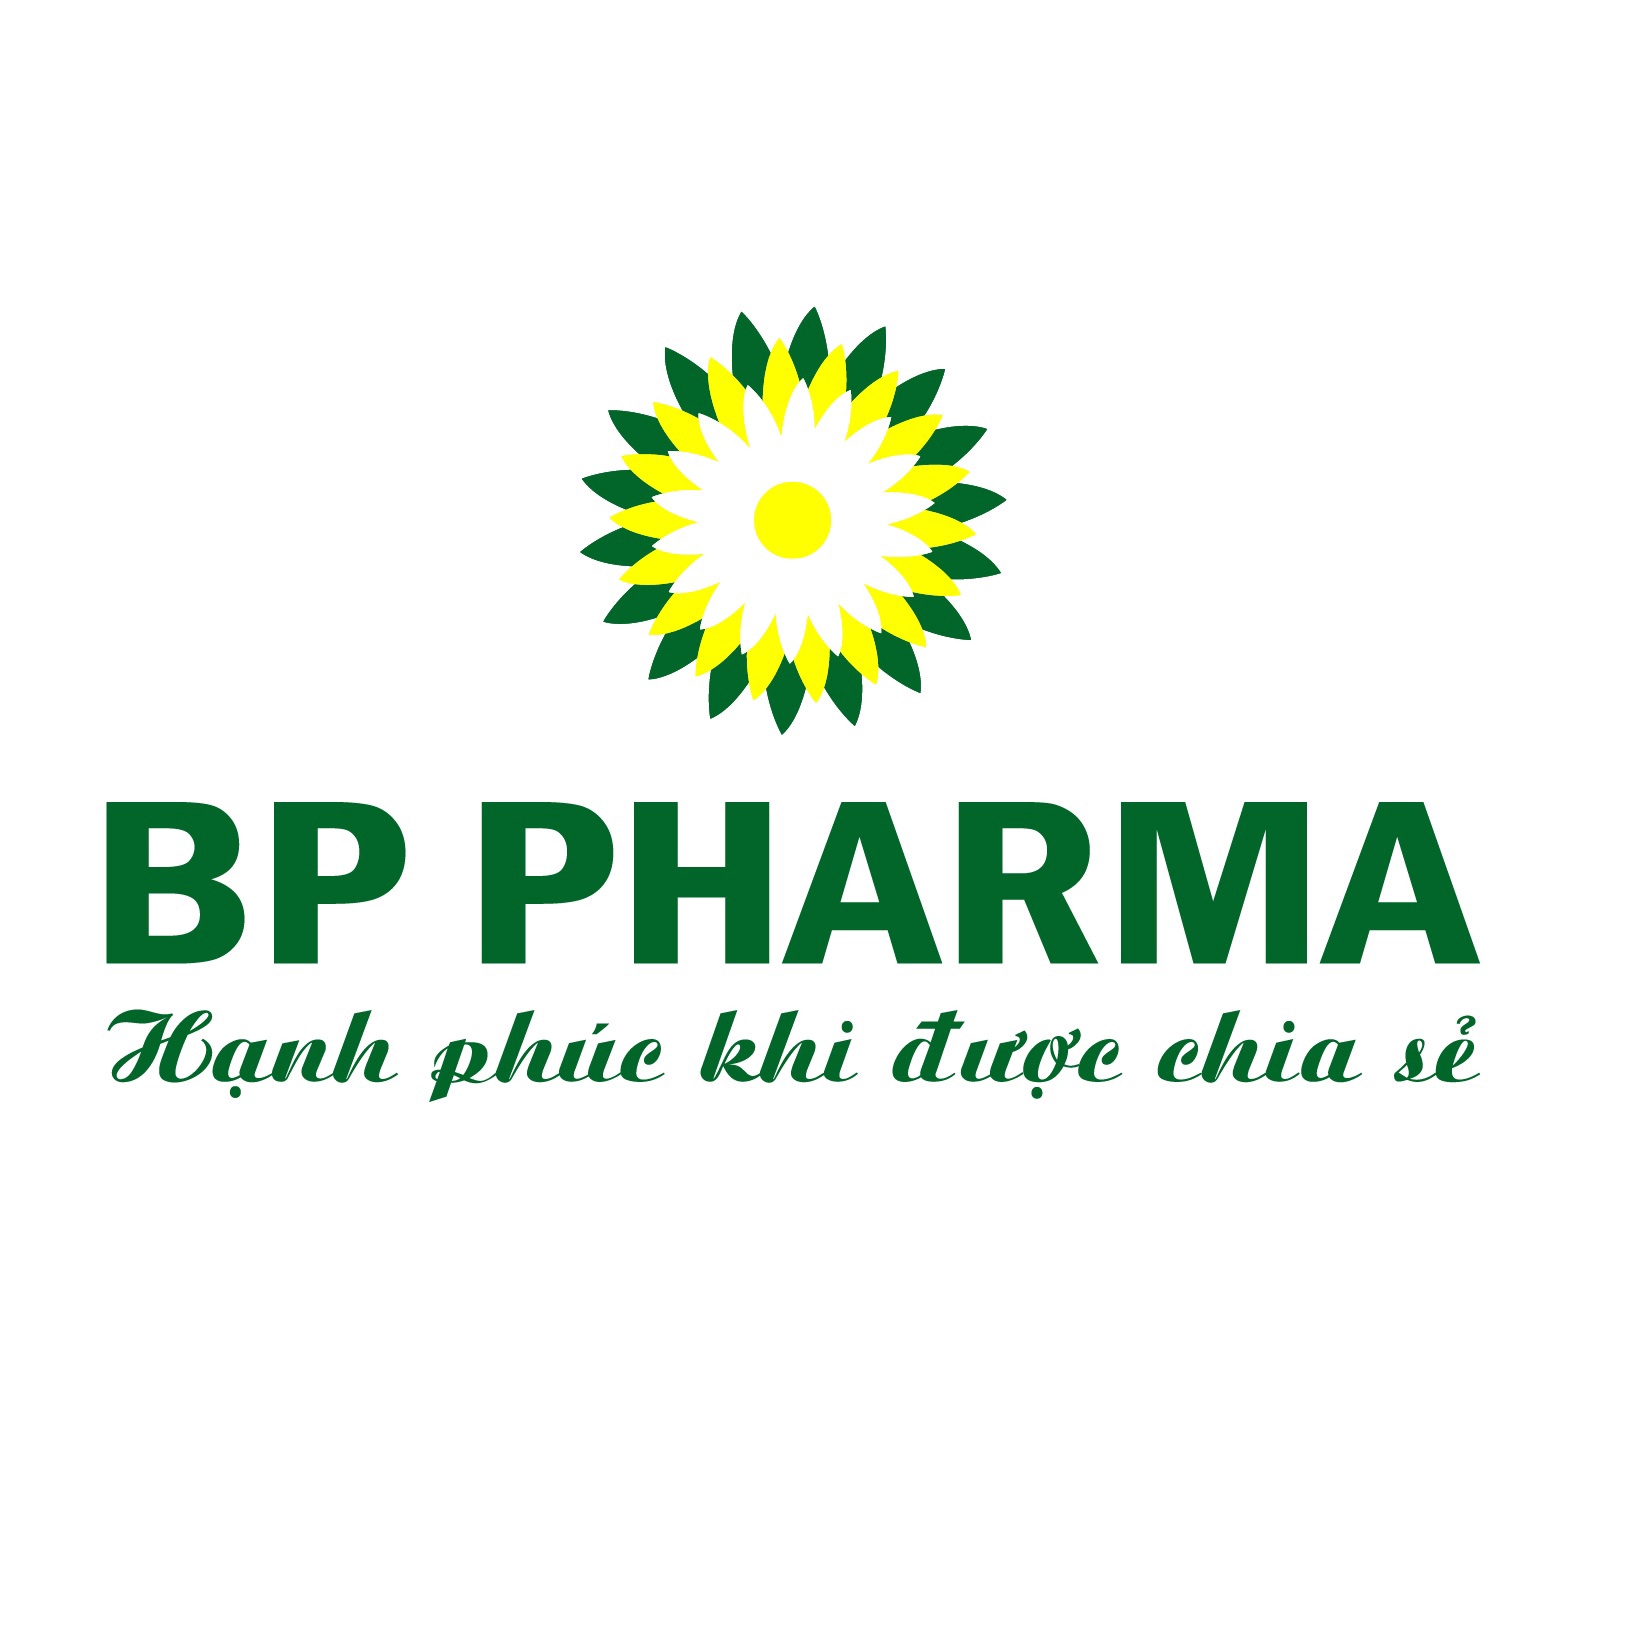 BP Pharma logo